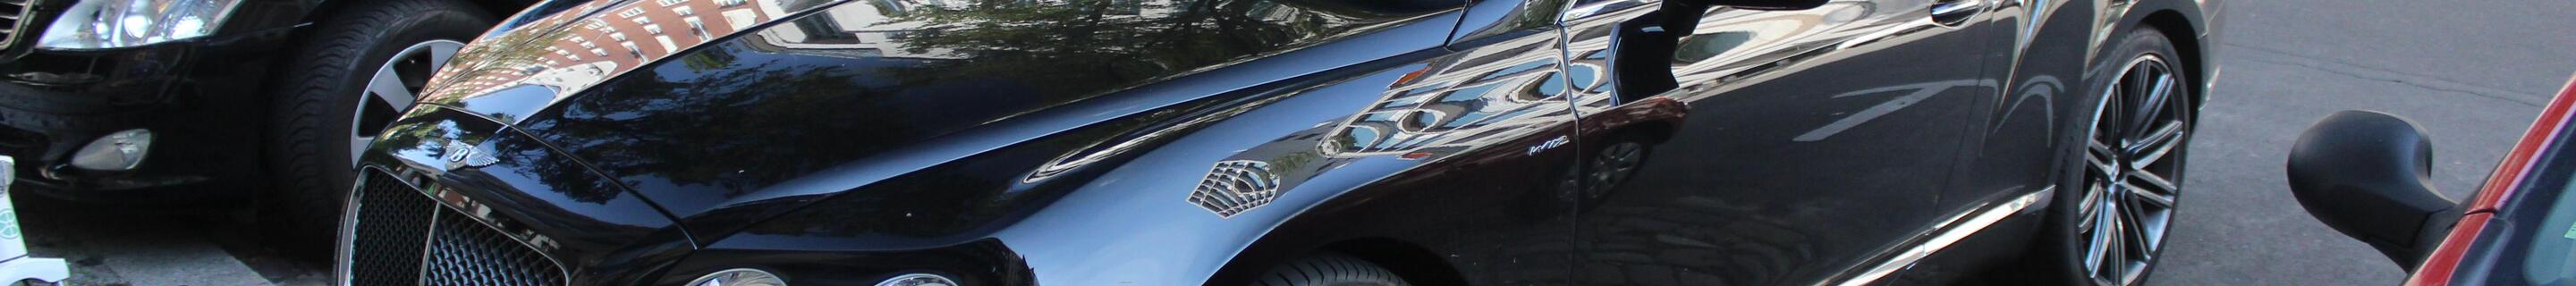 Bentley Continental GTC Speed 2013